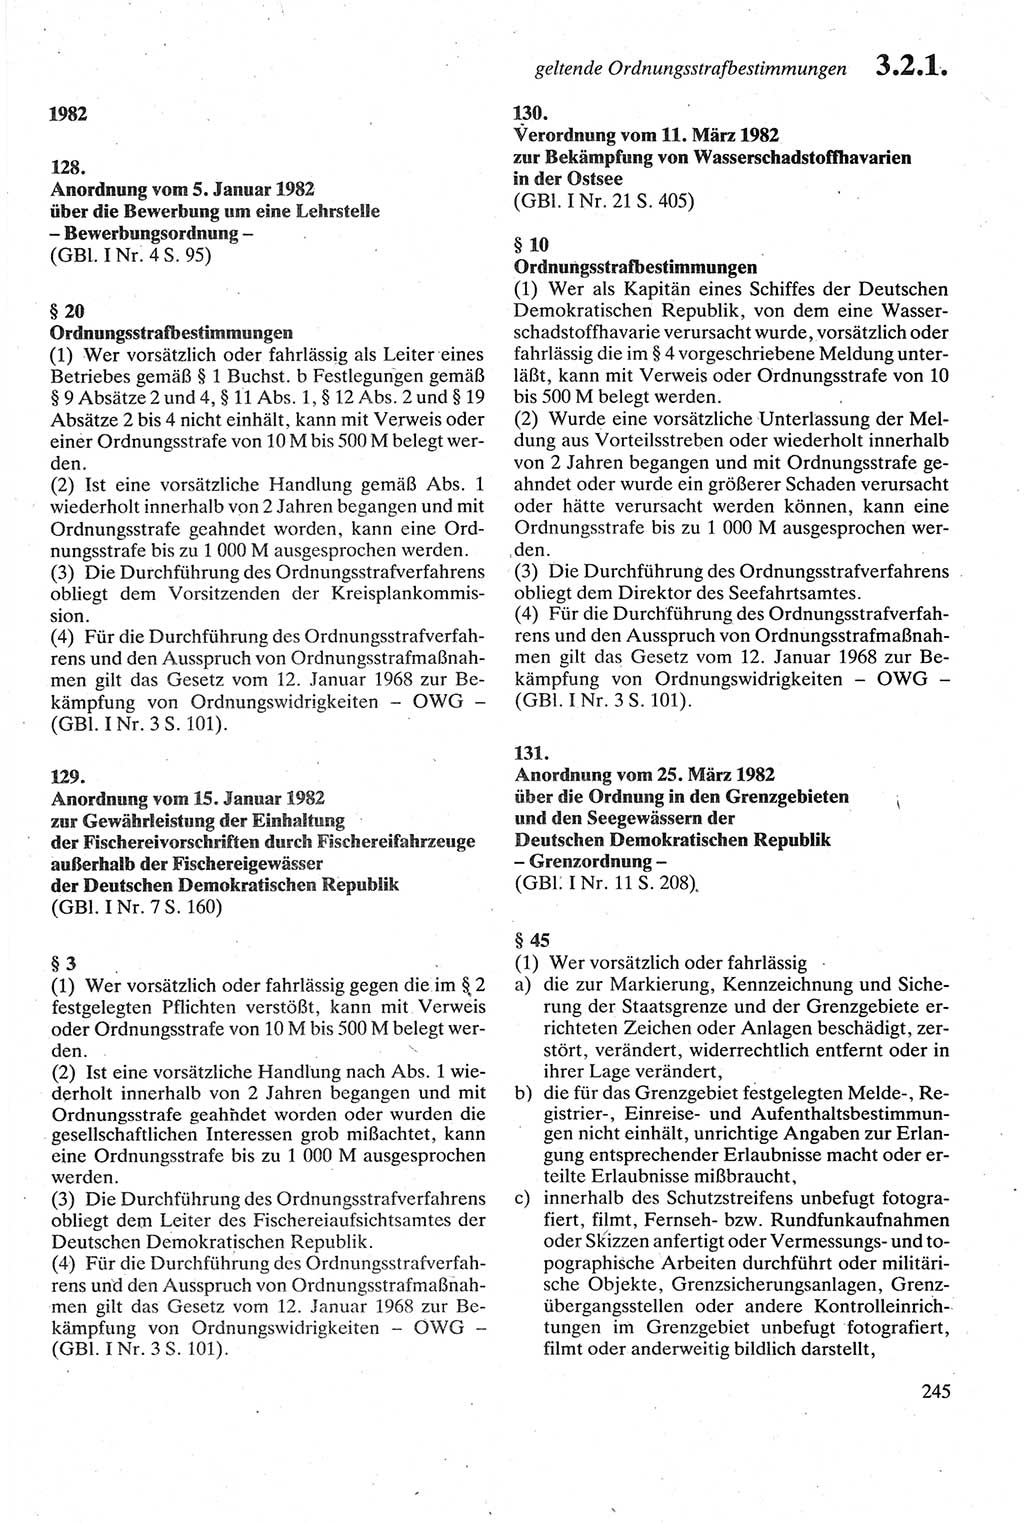 Strafgesetzbuch (StGB) der Deutschen Demokratischen Republik (DDR) sowie angrenzende Gesetze und Bestimmungen 1979, Seite 245 (StGB DDR Ges. Best. 1979, S. 245)